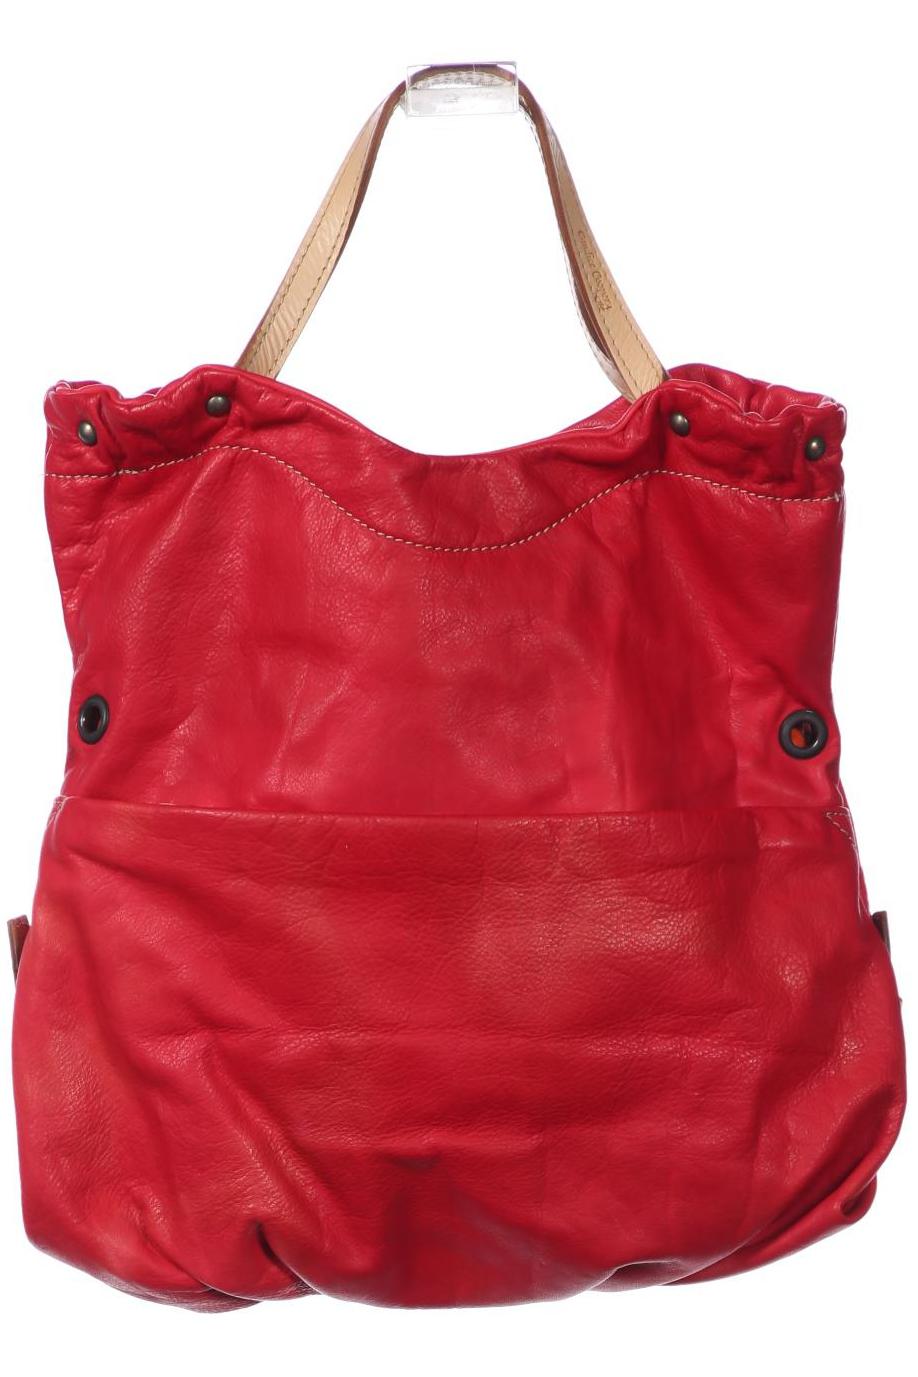 Candice Cooper Damen Handtasche, rot, Gr. von Candice Cooper